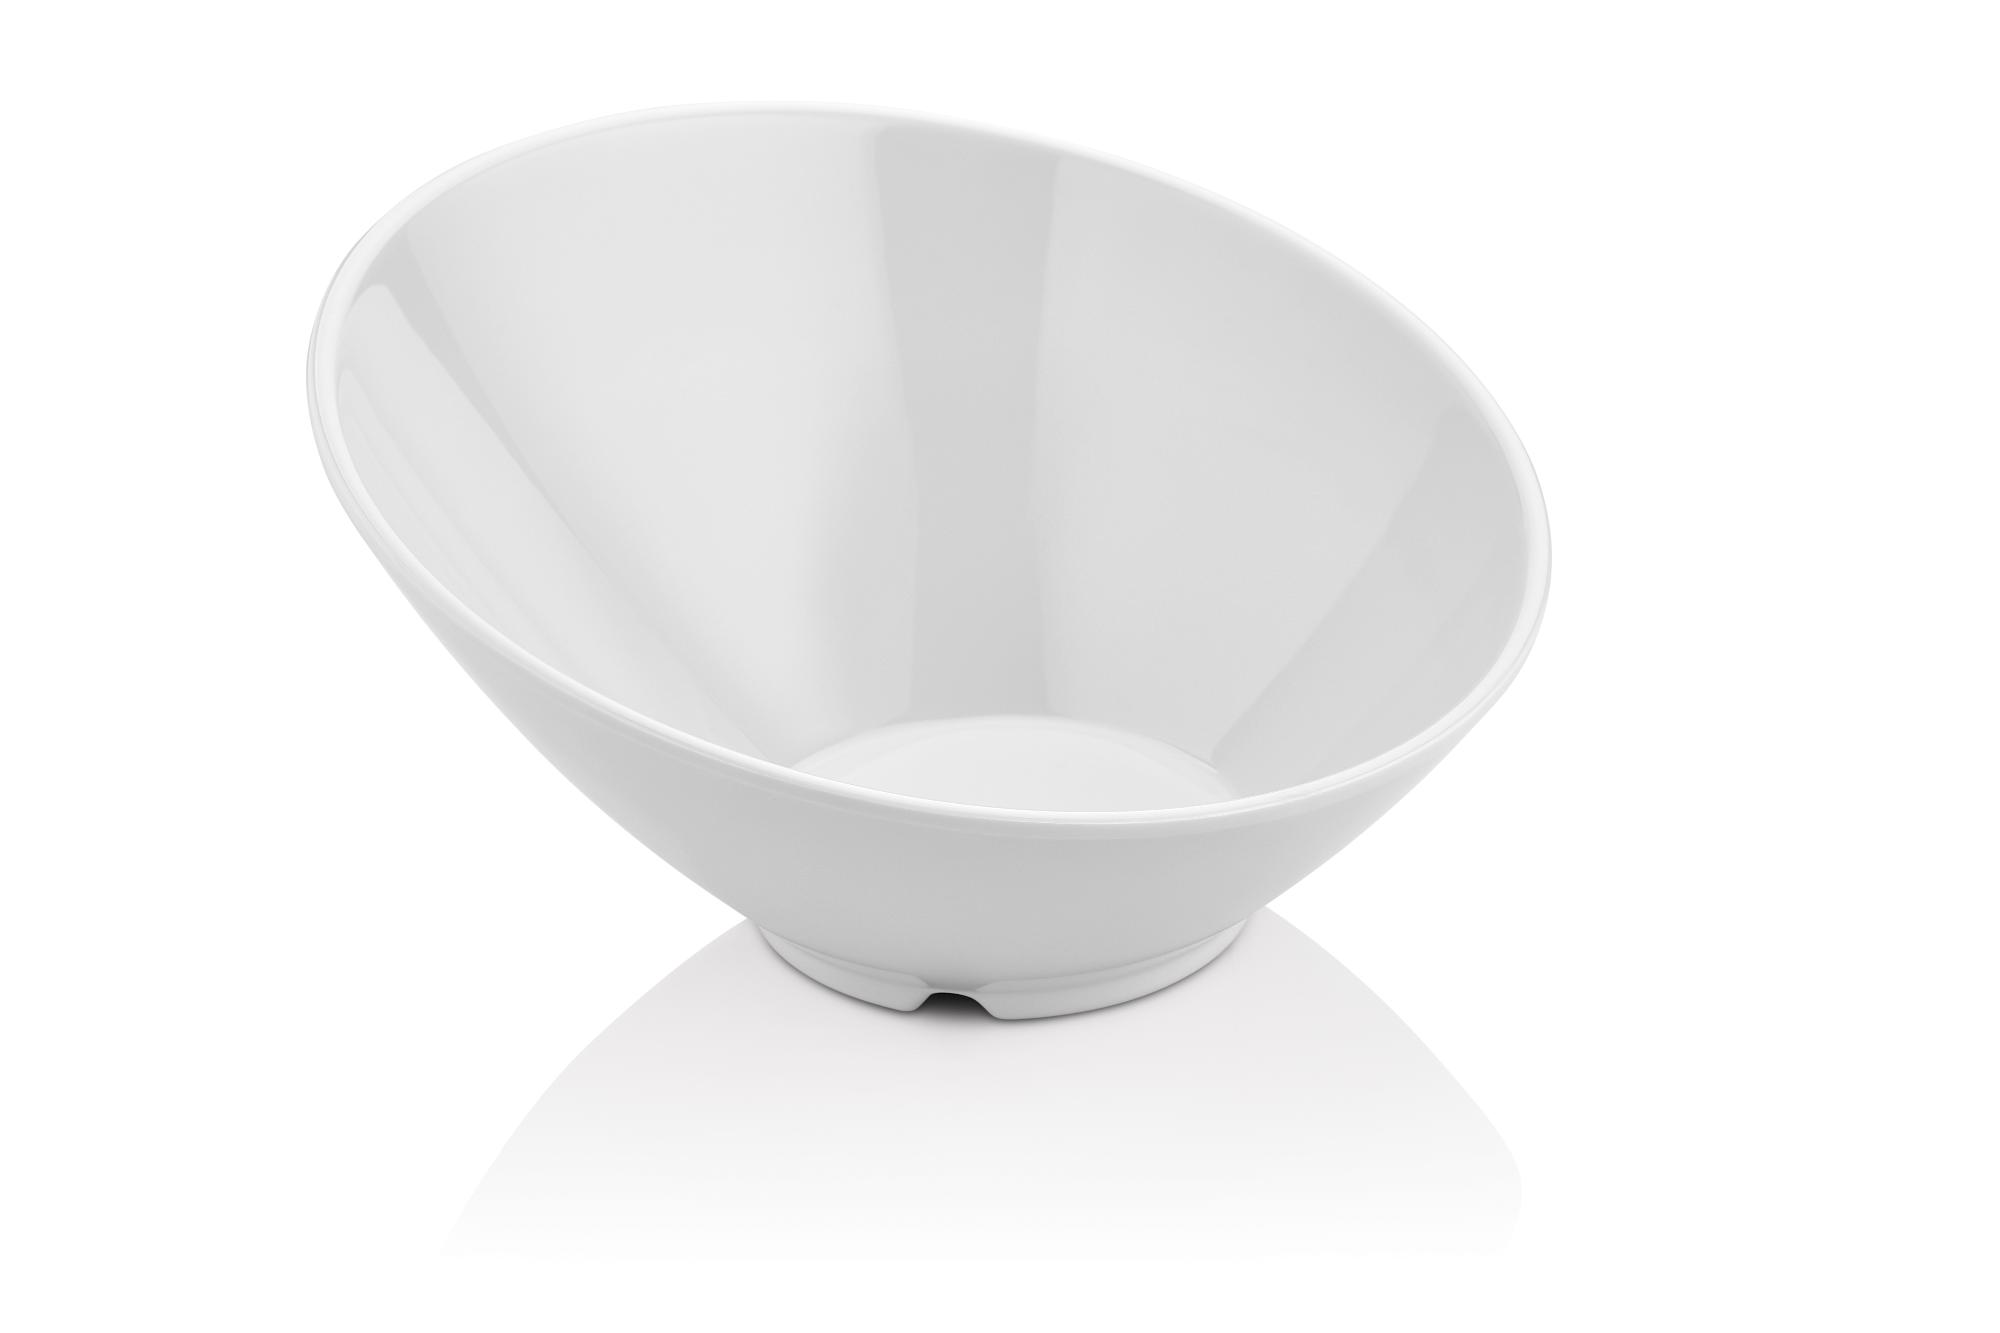 Slanted bowl made of melamine, white, 262x(h)138mm